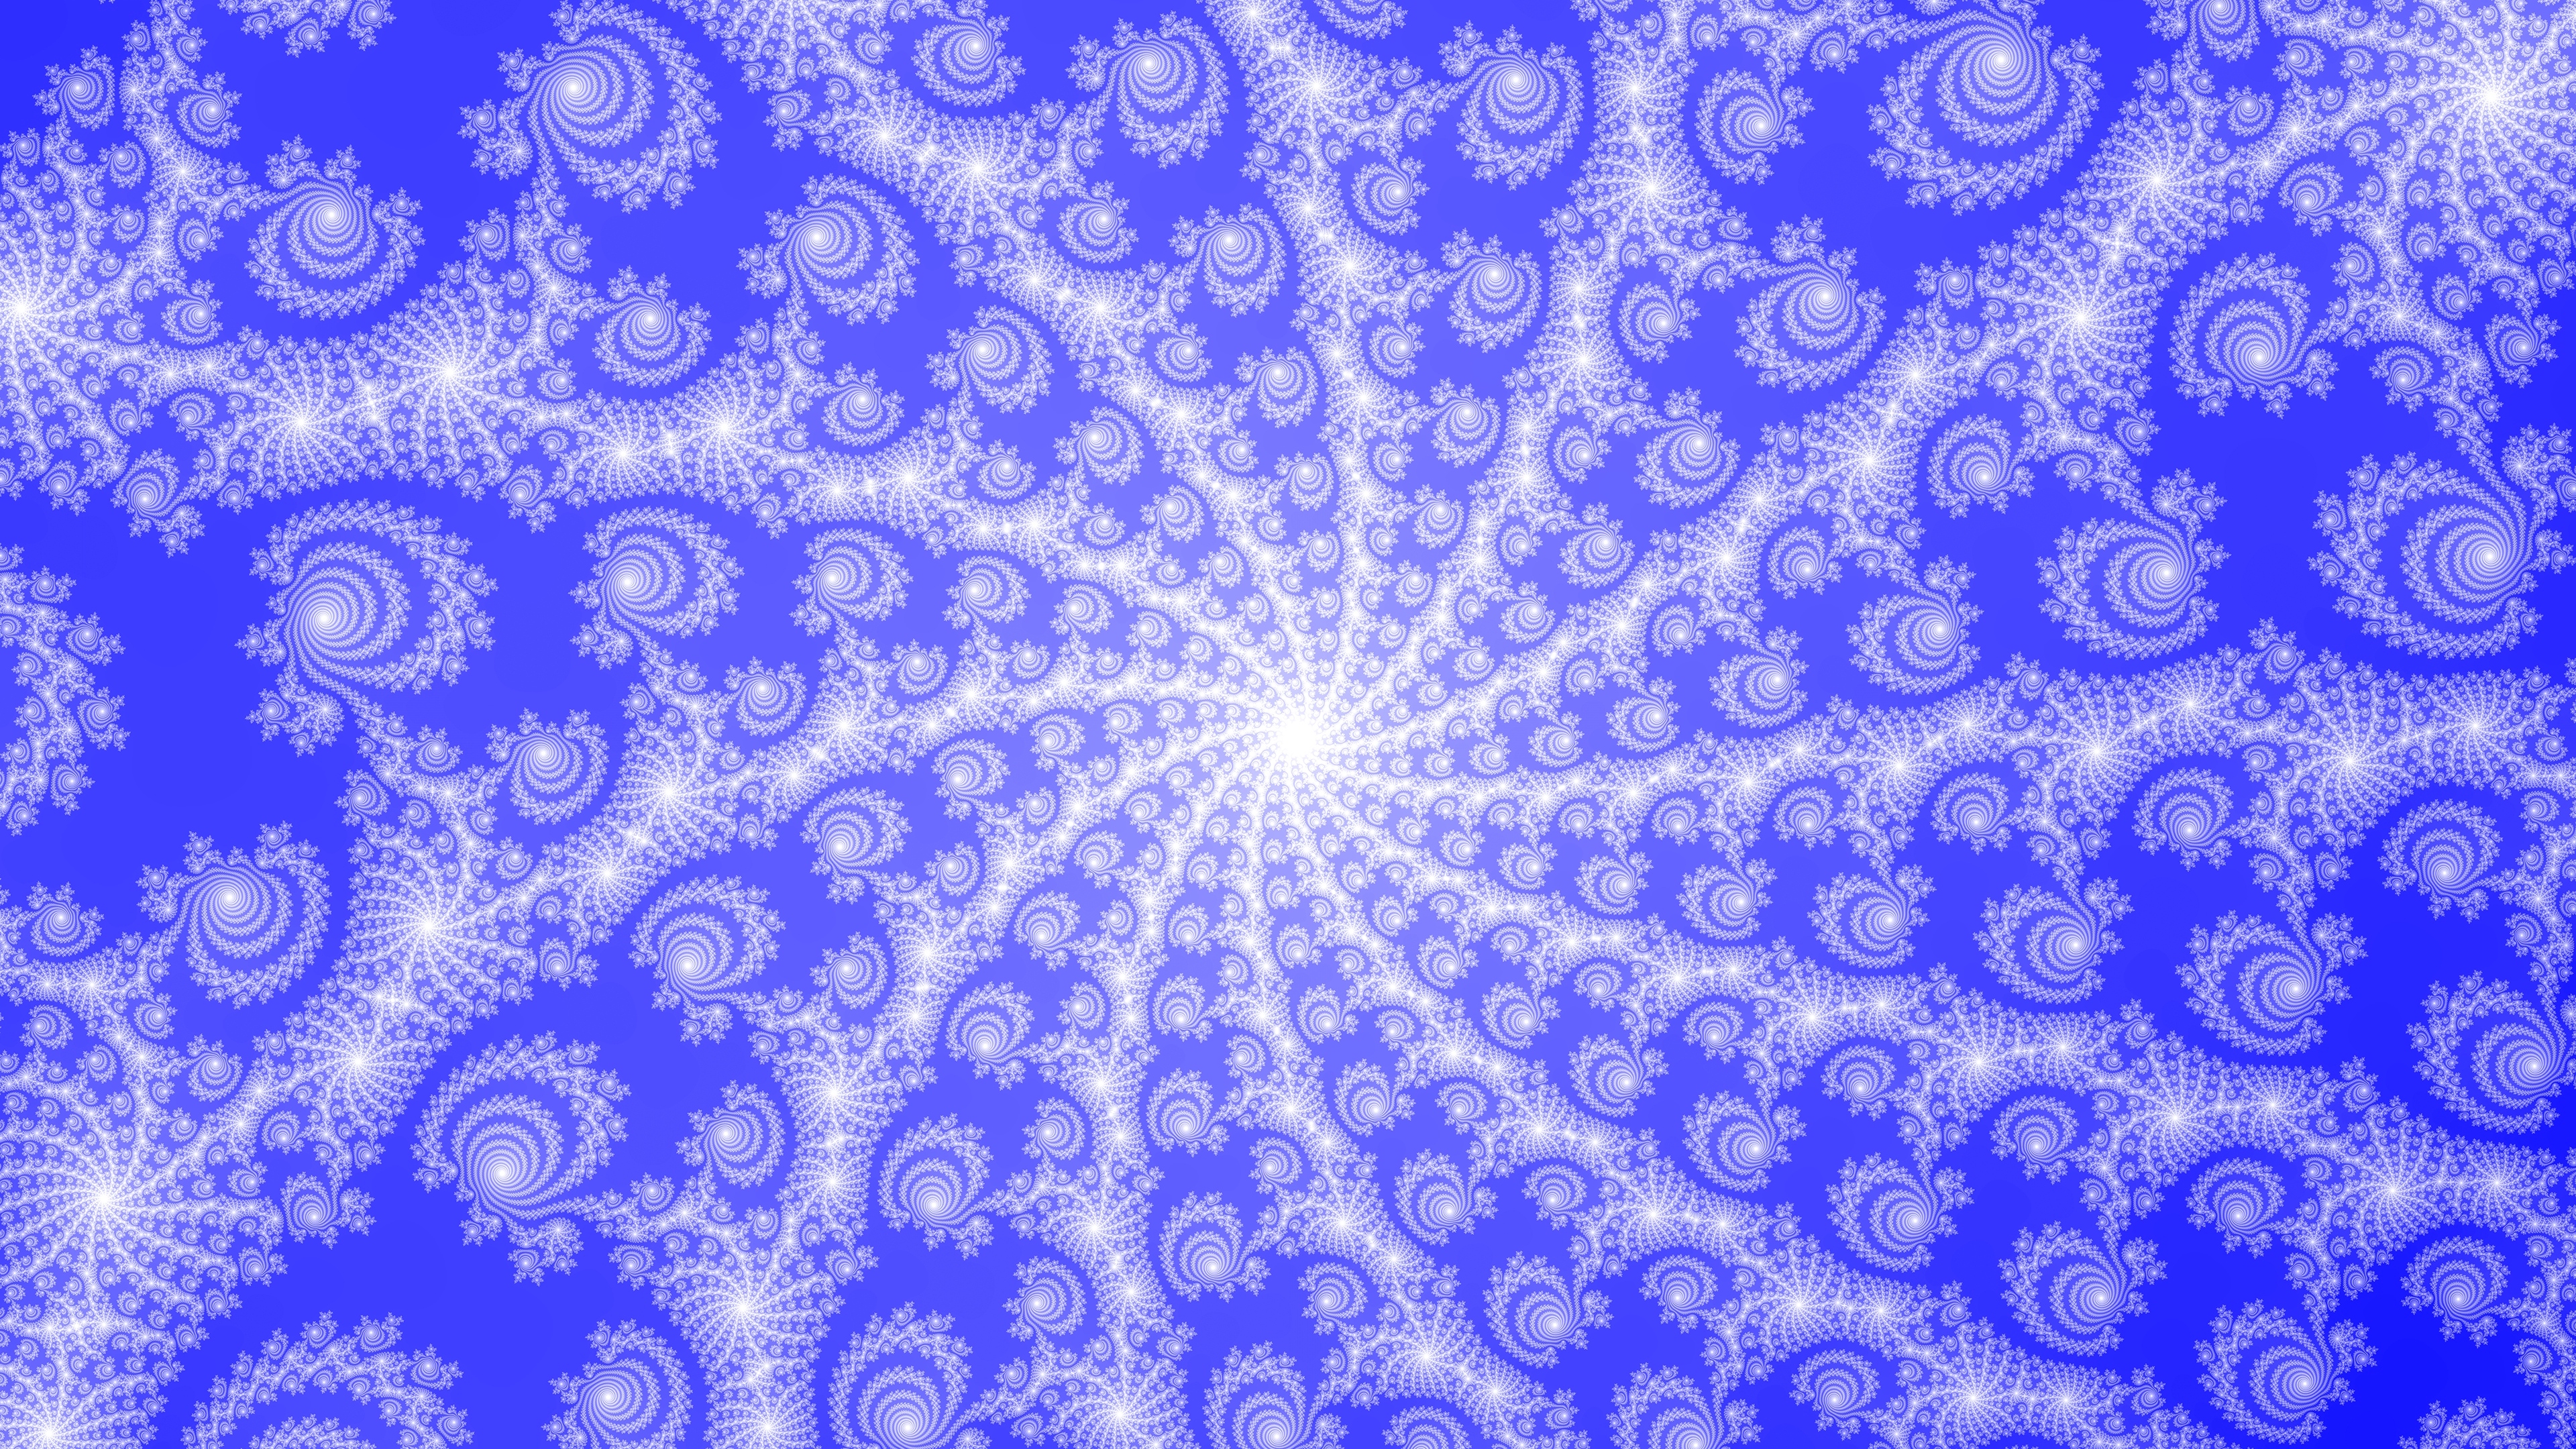 fractal rotation blue patterns 4k 1539369890 - fractal, rotation, blue, patterns 4k - rotation, Fractal, blue